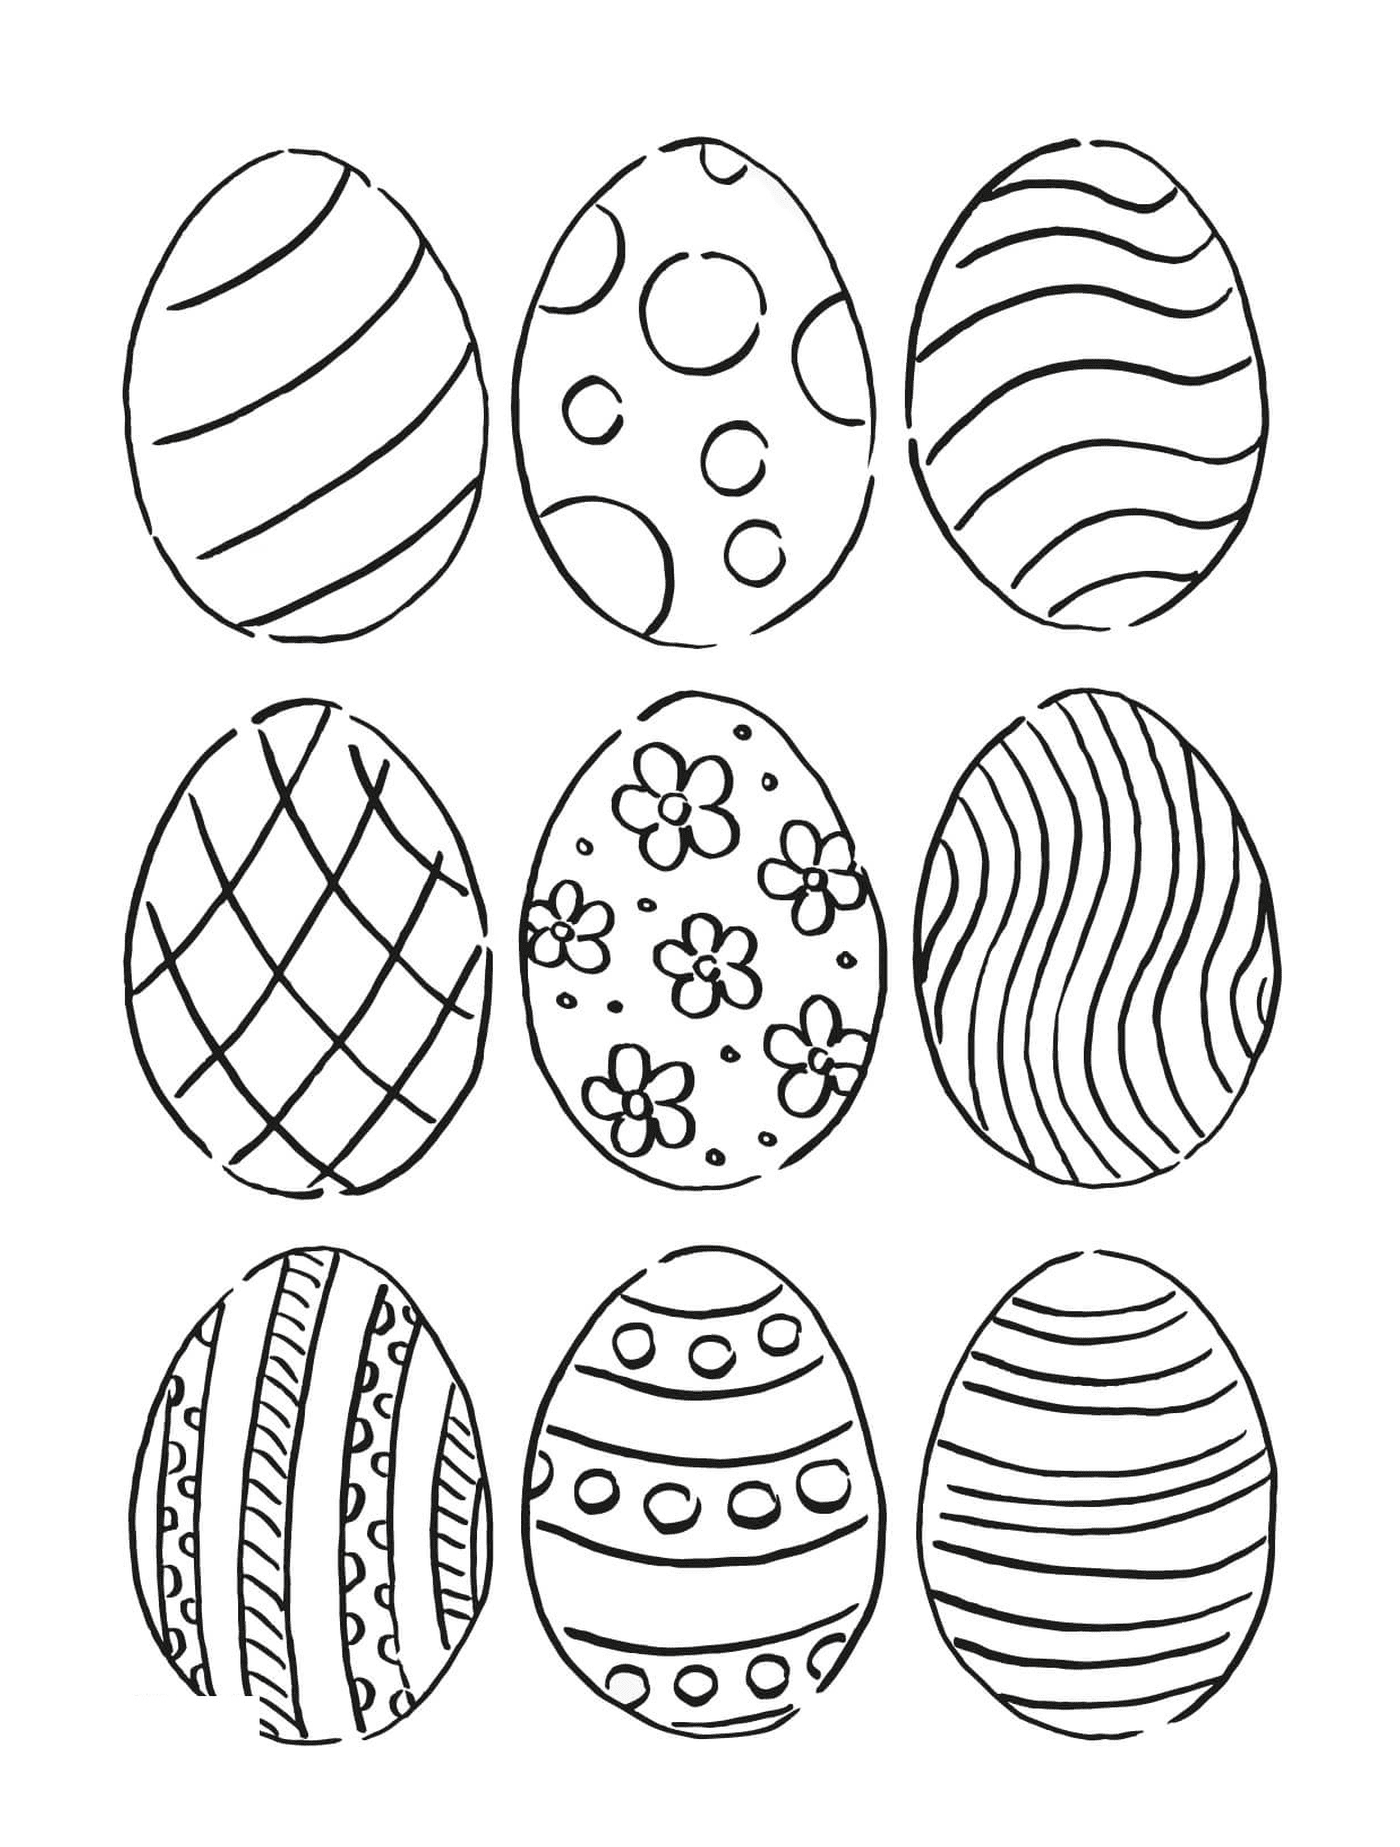   Ensemble de neuf œufs avec différents motifs 